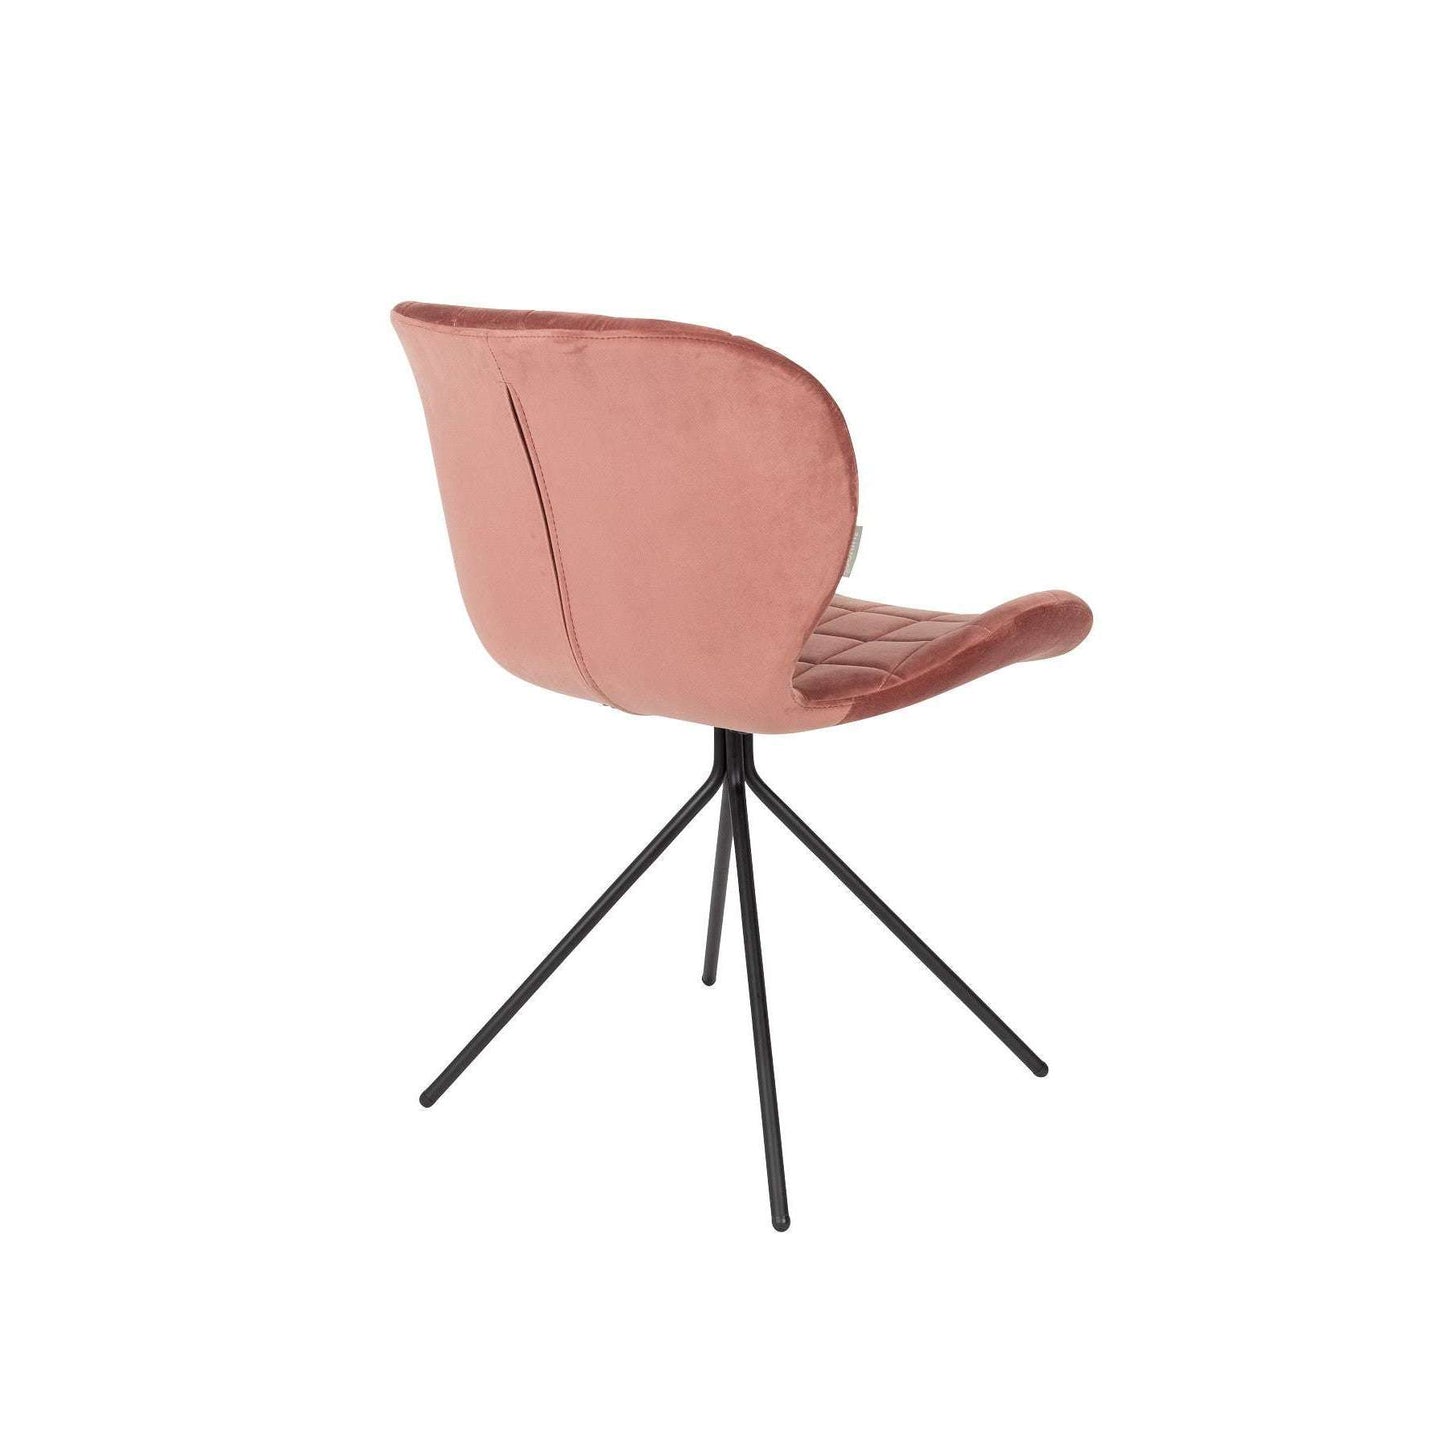 Zuiver stoel omg velvet oud roze 56 x 51 x 80 cm